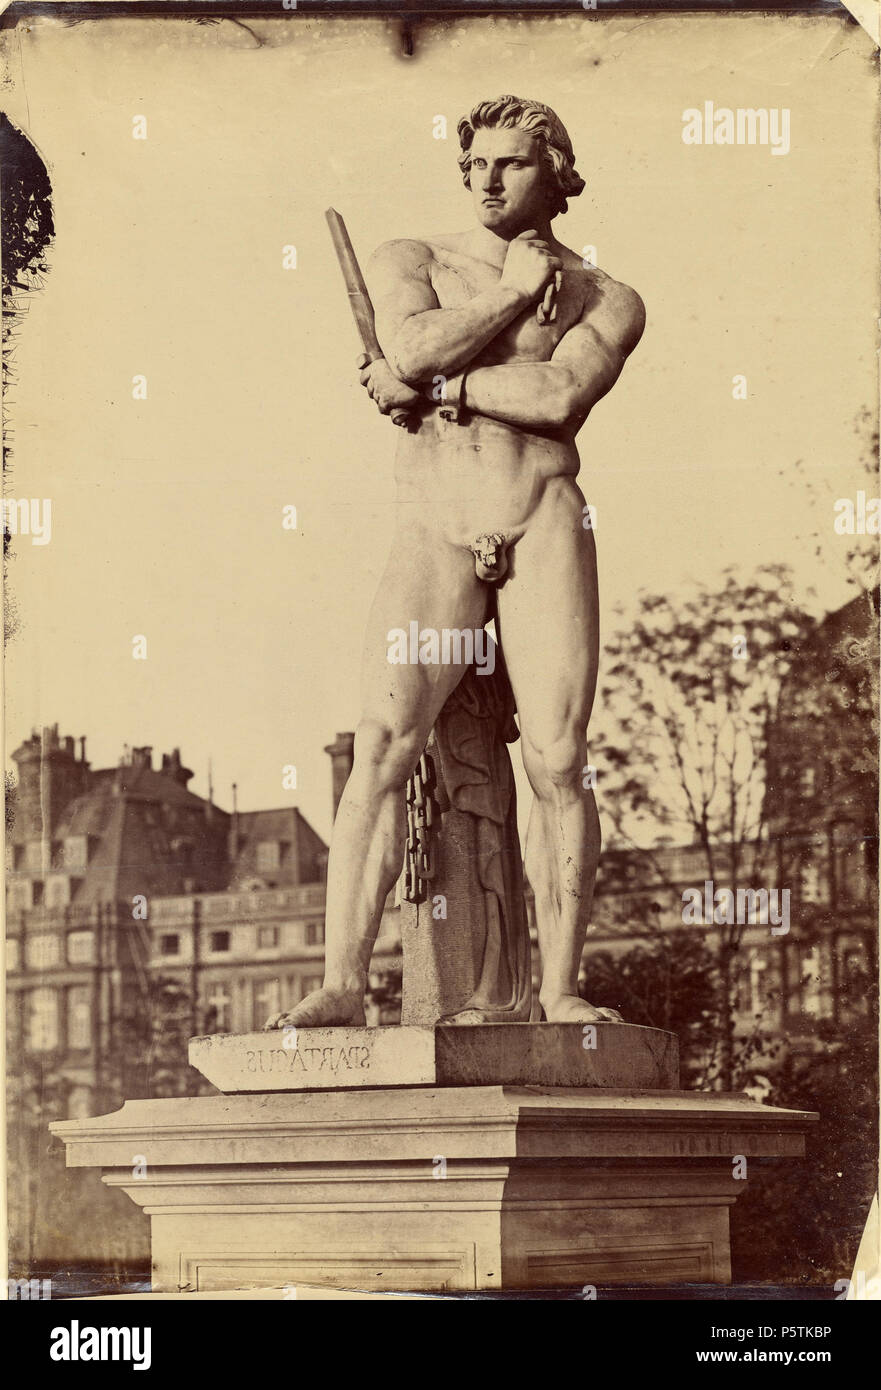 [Spartaco, i Giardini delle Tuileries di Parigi]; Charles Nègre (francese, 1820 - 1880); Paris, Francia; giugno 1859; albume silver stampa; 41,9 x 28,3 cm (16 1/2 x 11 1/8 in.); 92.XM.43 328 Charles Nègre, Spartaco, i Giardini delle Tuileries, Parigi, giugno 1859 Foto Stock